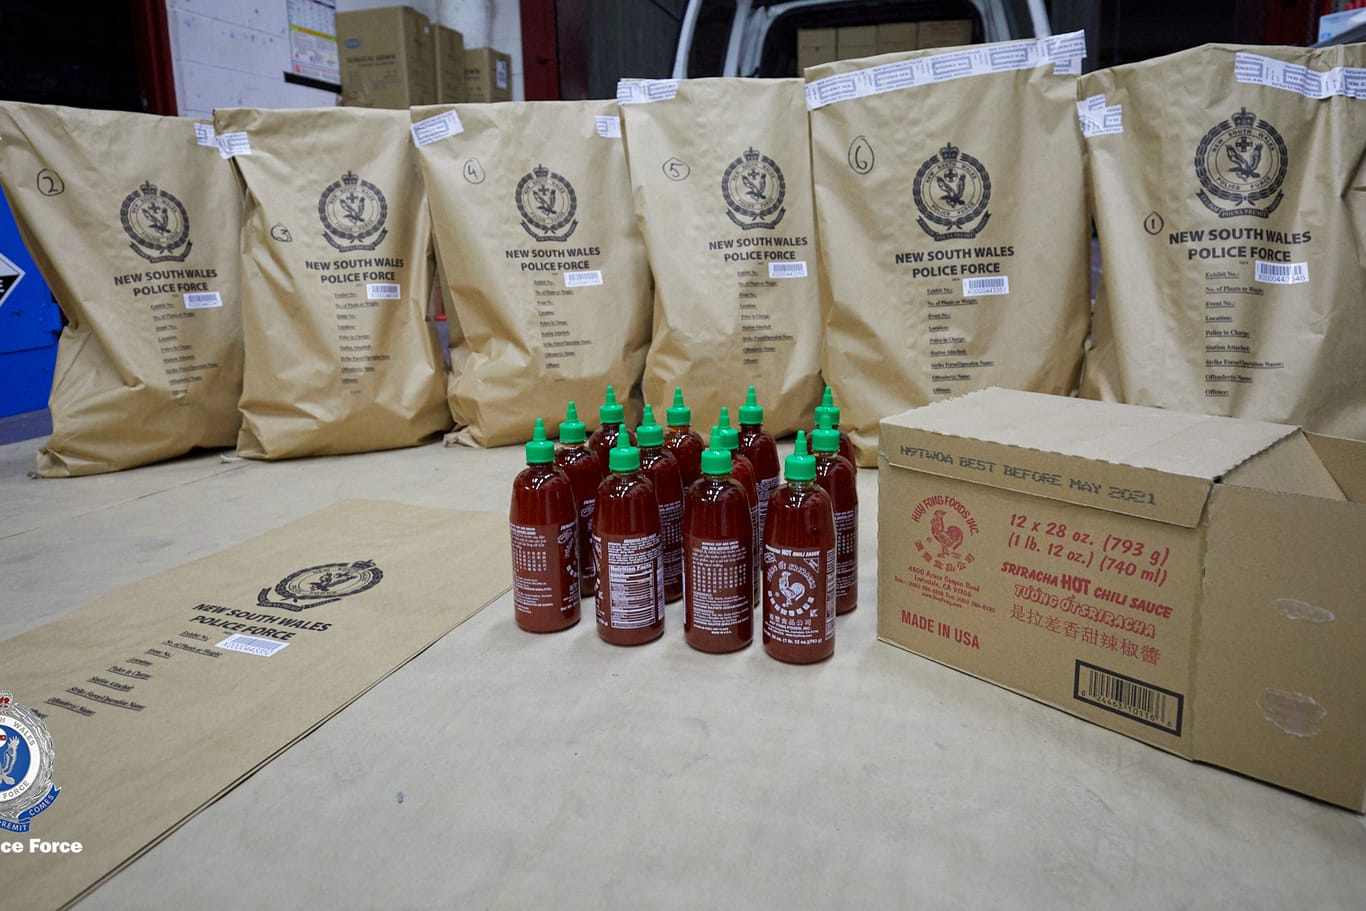 Geschmuggeltes Rauschgift in Soßenflaschen der Marke Sriracha: Die Drogendealer verstecken ihre Ware oft in unscheinbaren Handelsgütern.